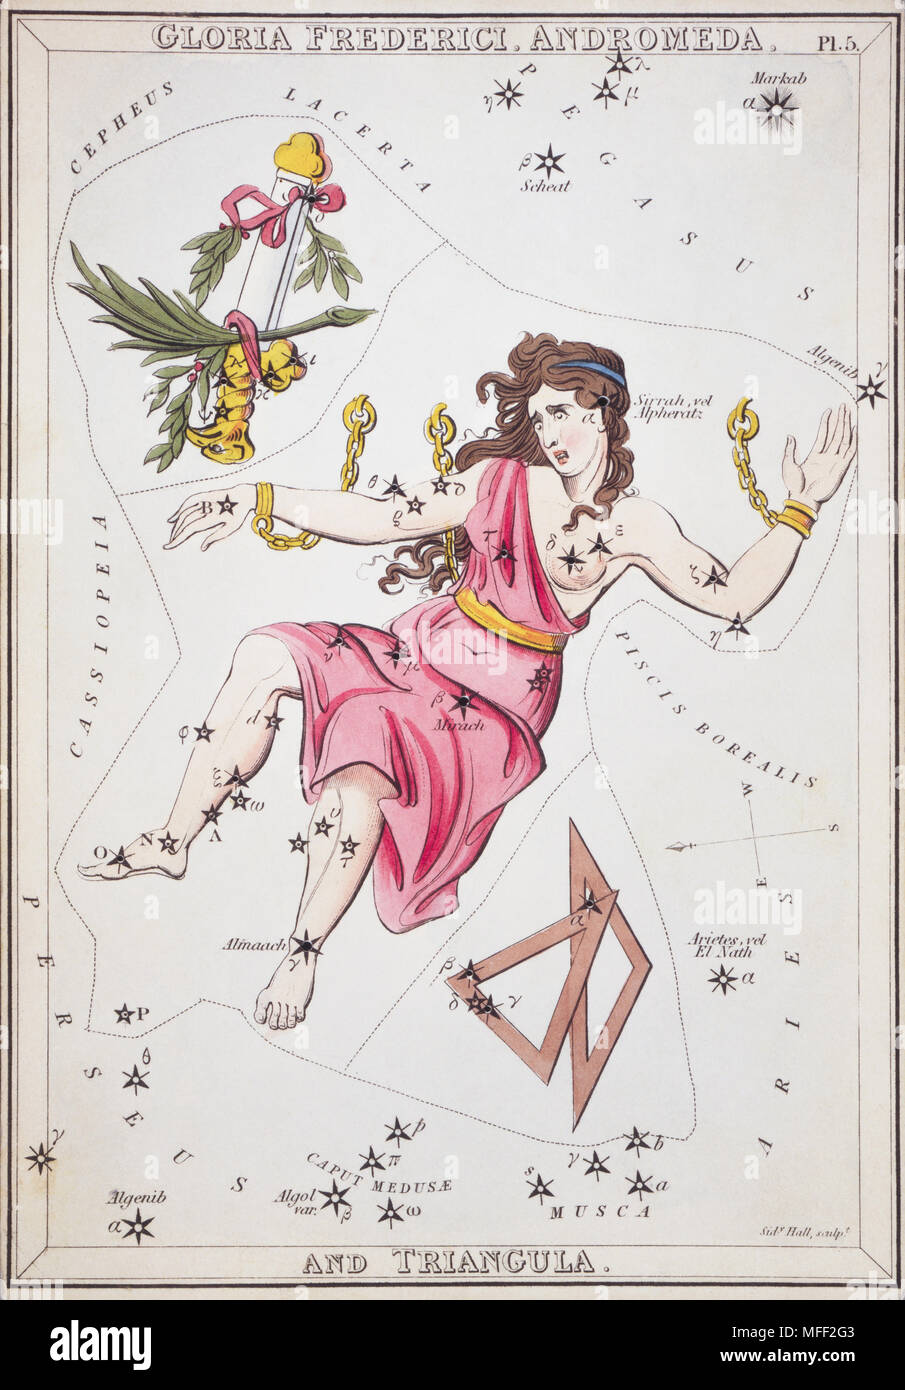 Gloria Frederici, Andromeda et Triangula. Numéro de carte 5 de l'Urania miroir, ou d'une vue sur le ciel, l'un d'un jeu de 32 cartes carte des étoiles astronomique gravée par Sidney Hall et publshed 1824. Banque D'Images